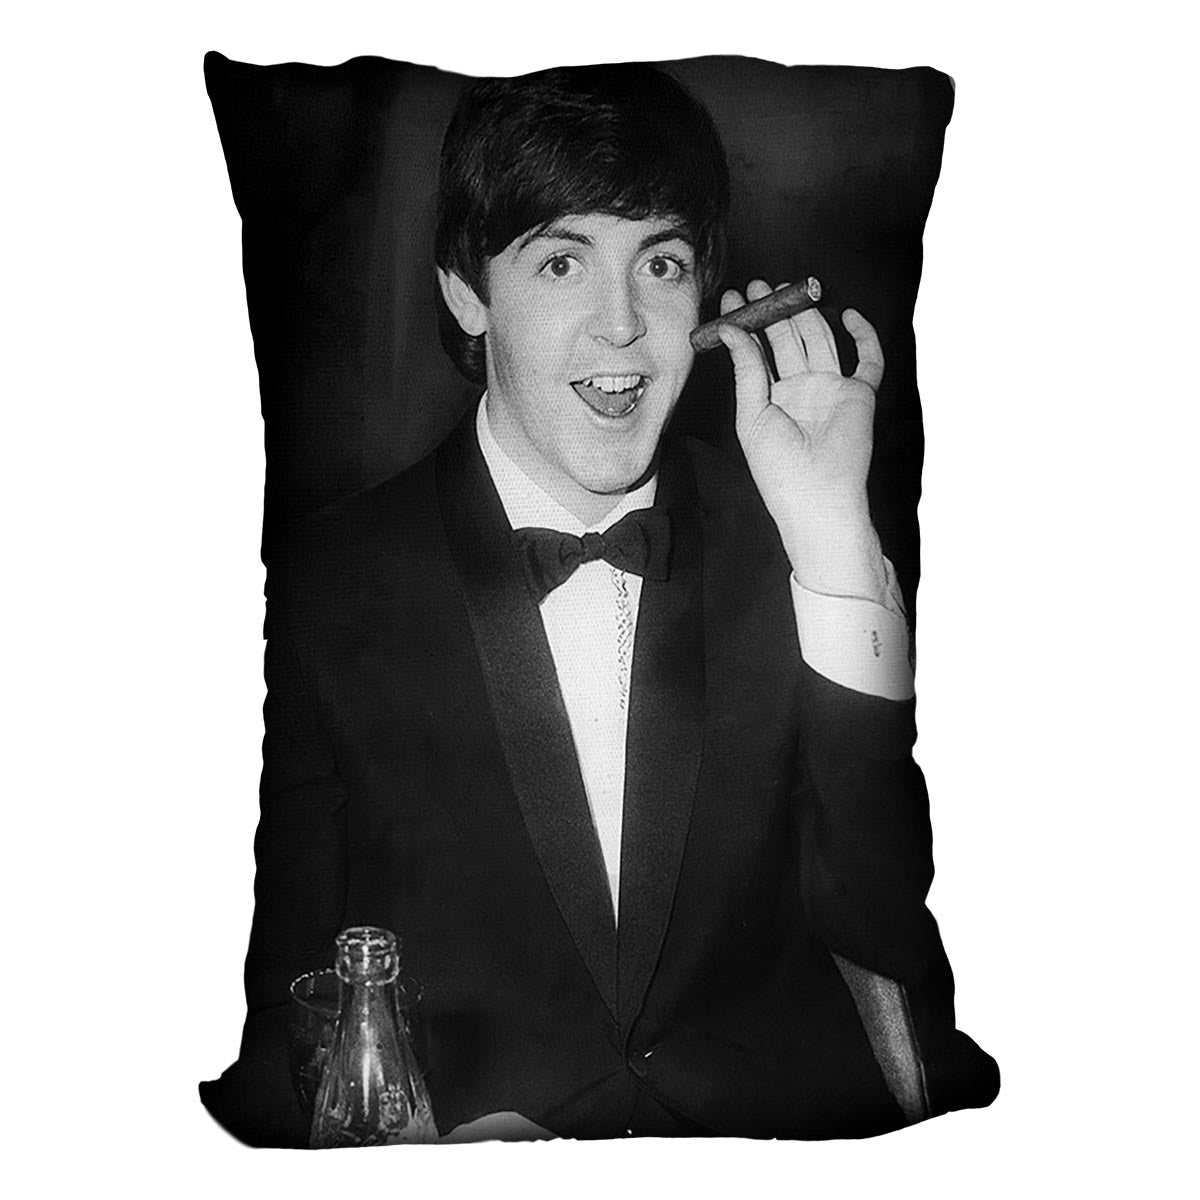 Paul McCartney with a cigar Cushion